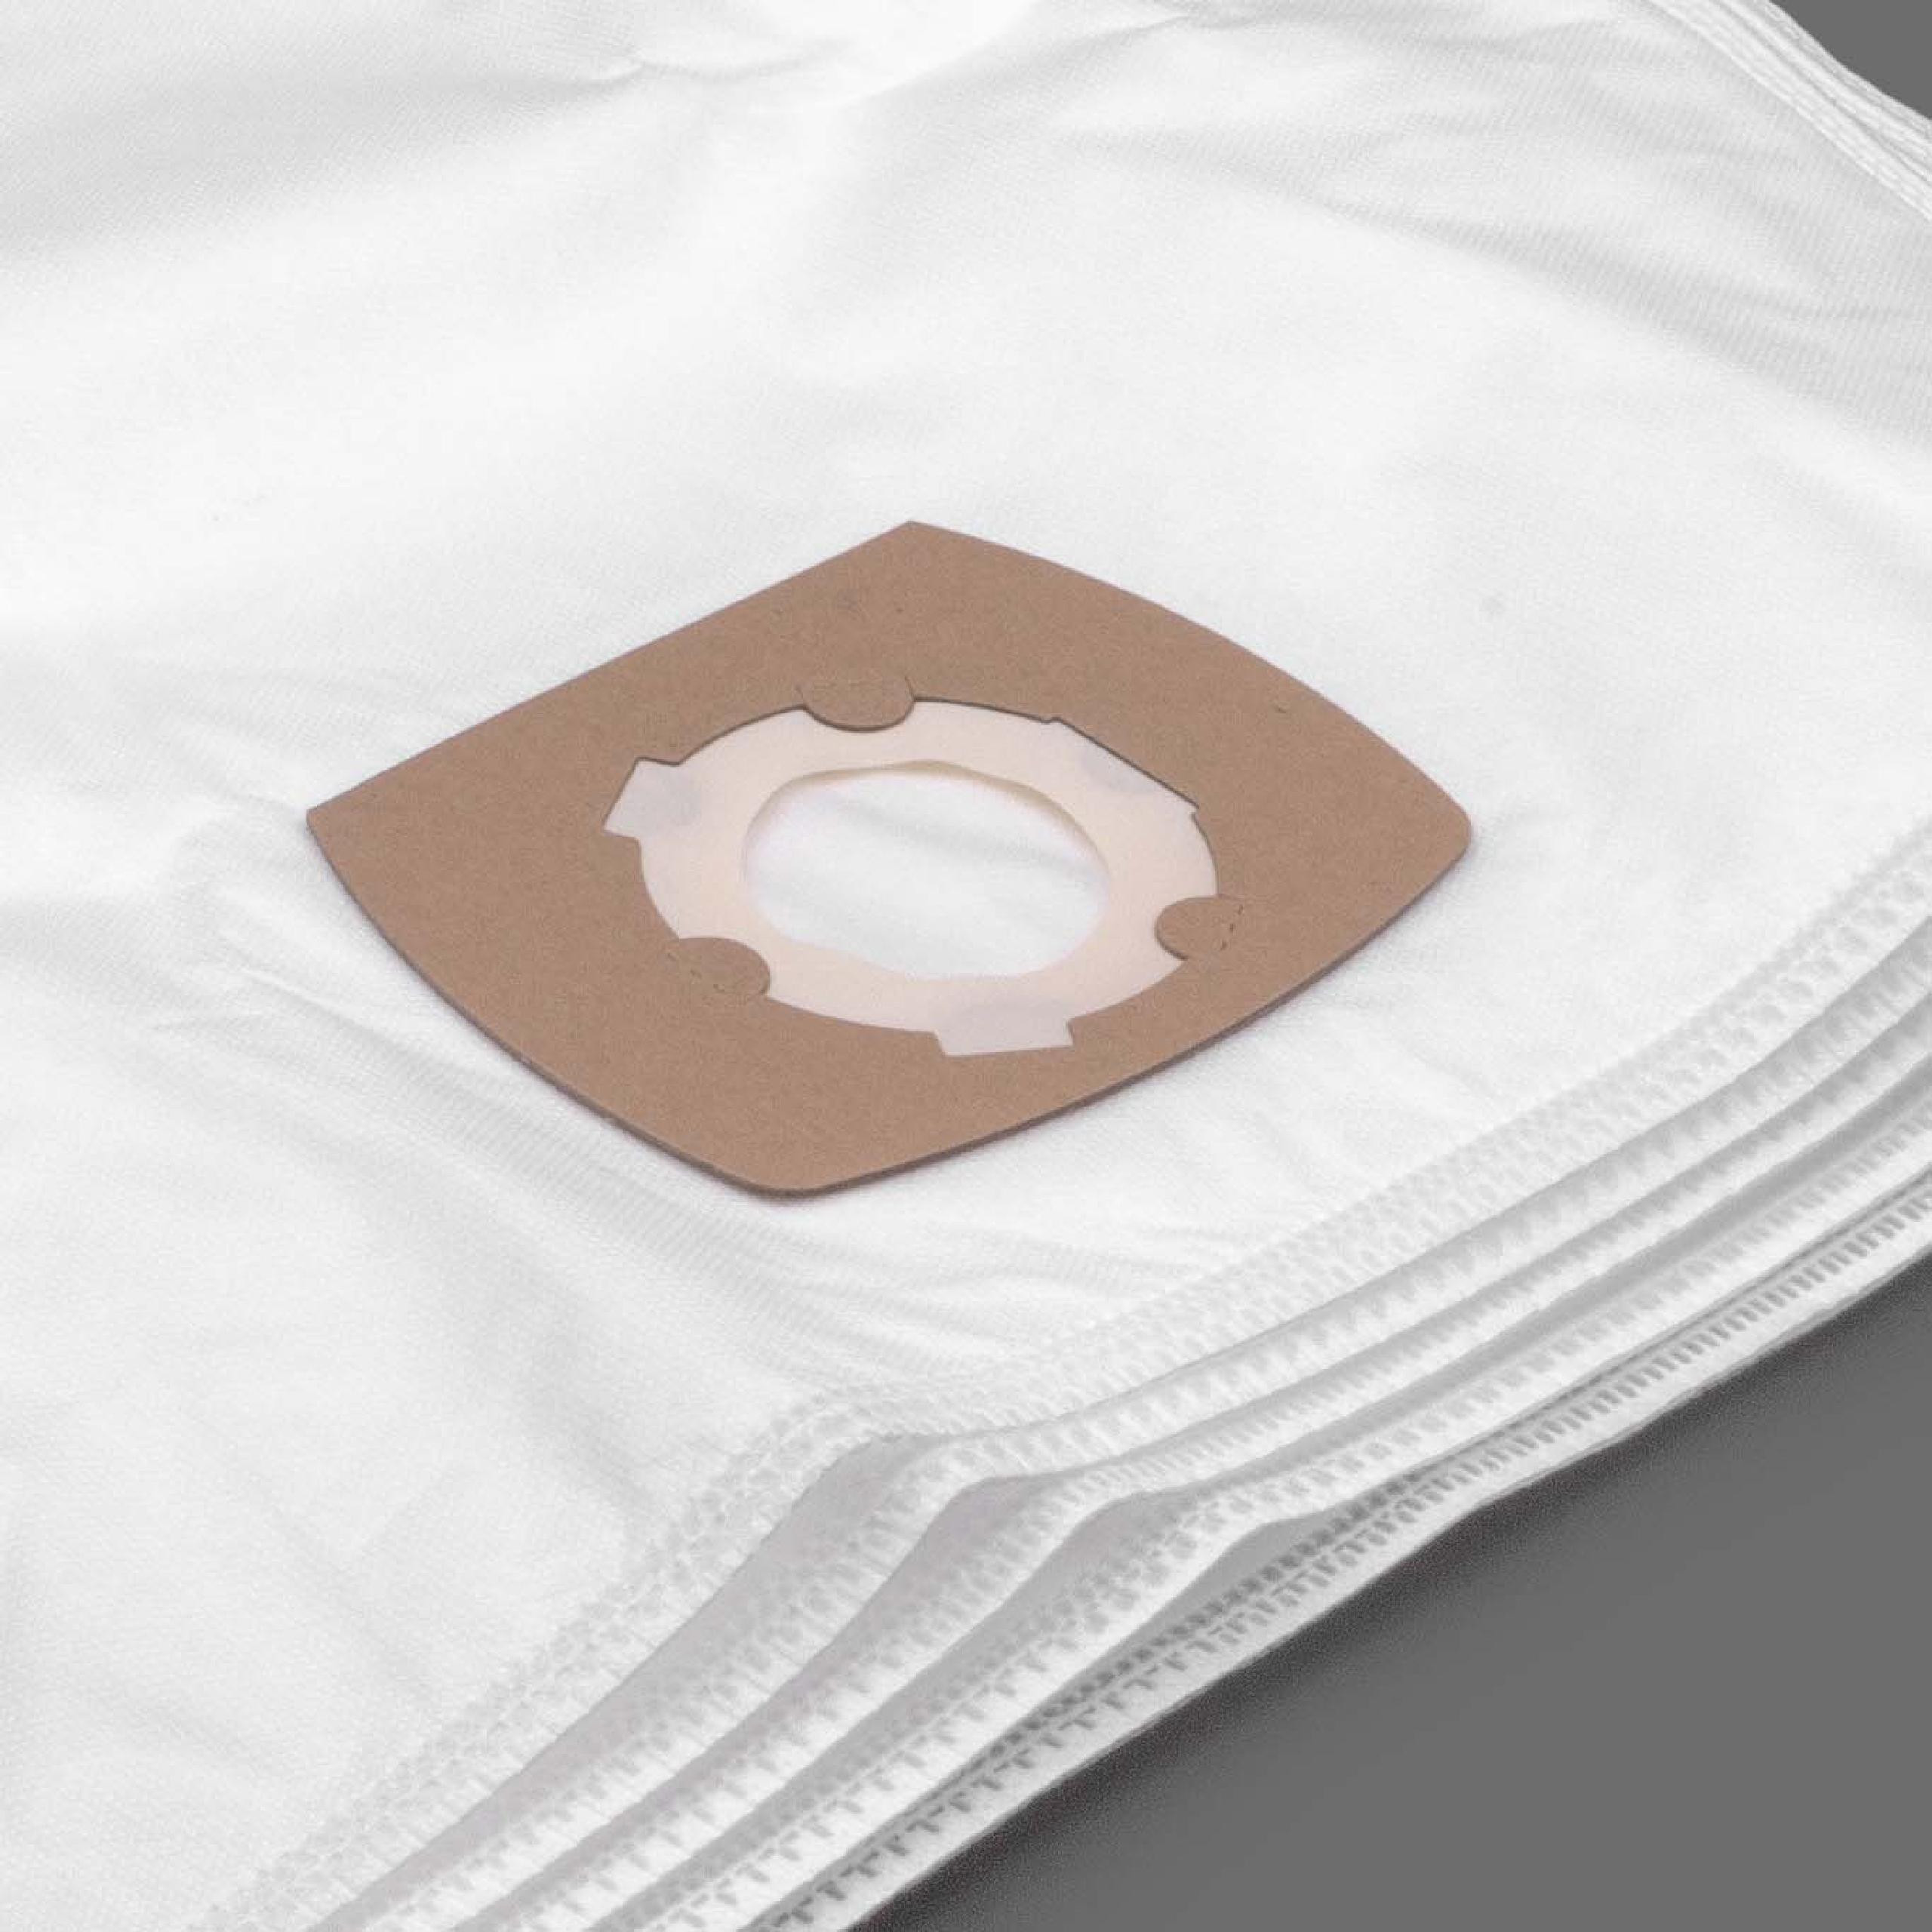 5 Staubsaugerbeutel Filtertüten Mikrovlies für Staubsauger wie Grundig Typ G - Hygiene Bag